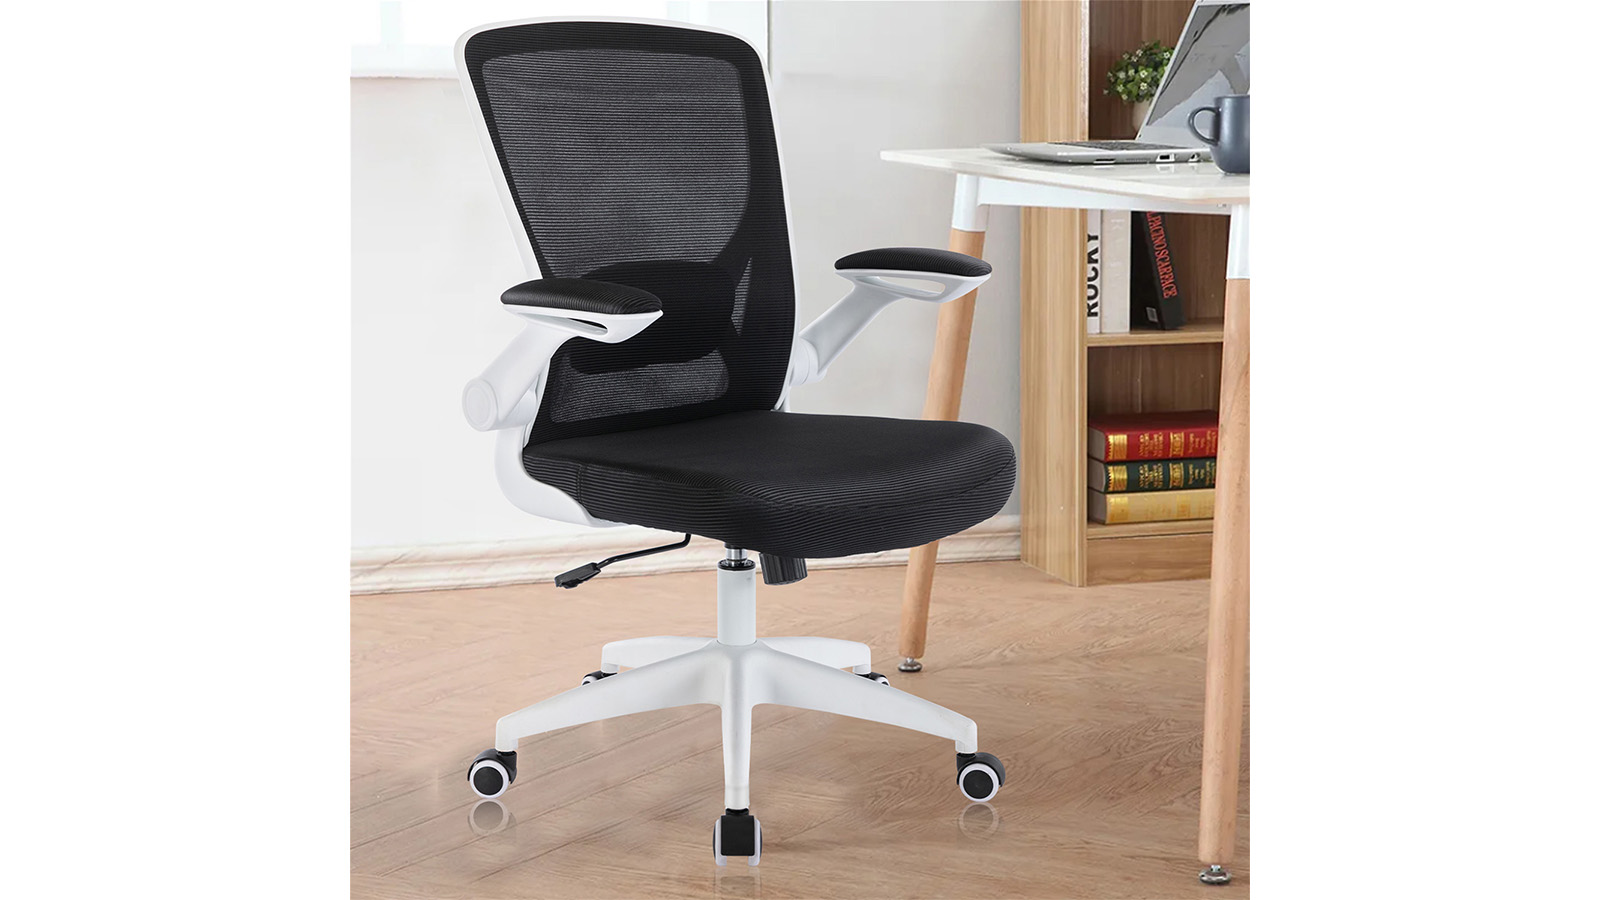 Kerdom Office Chair: Adjustable Armrests